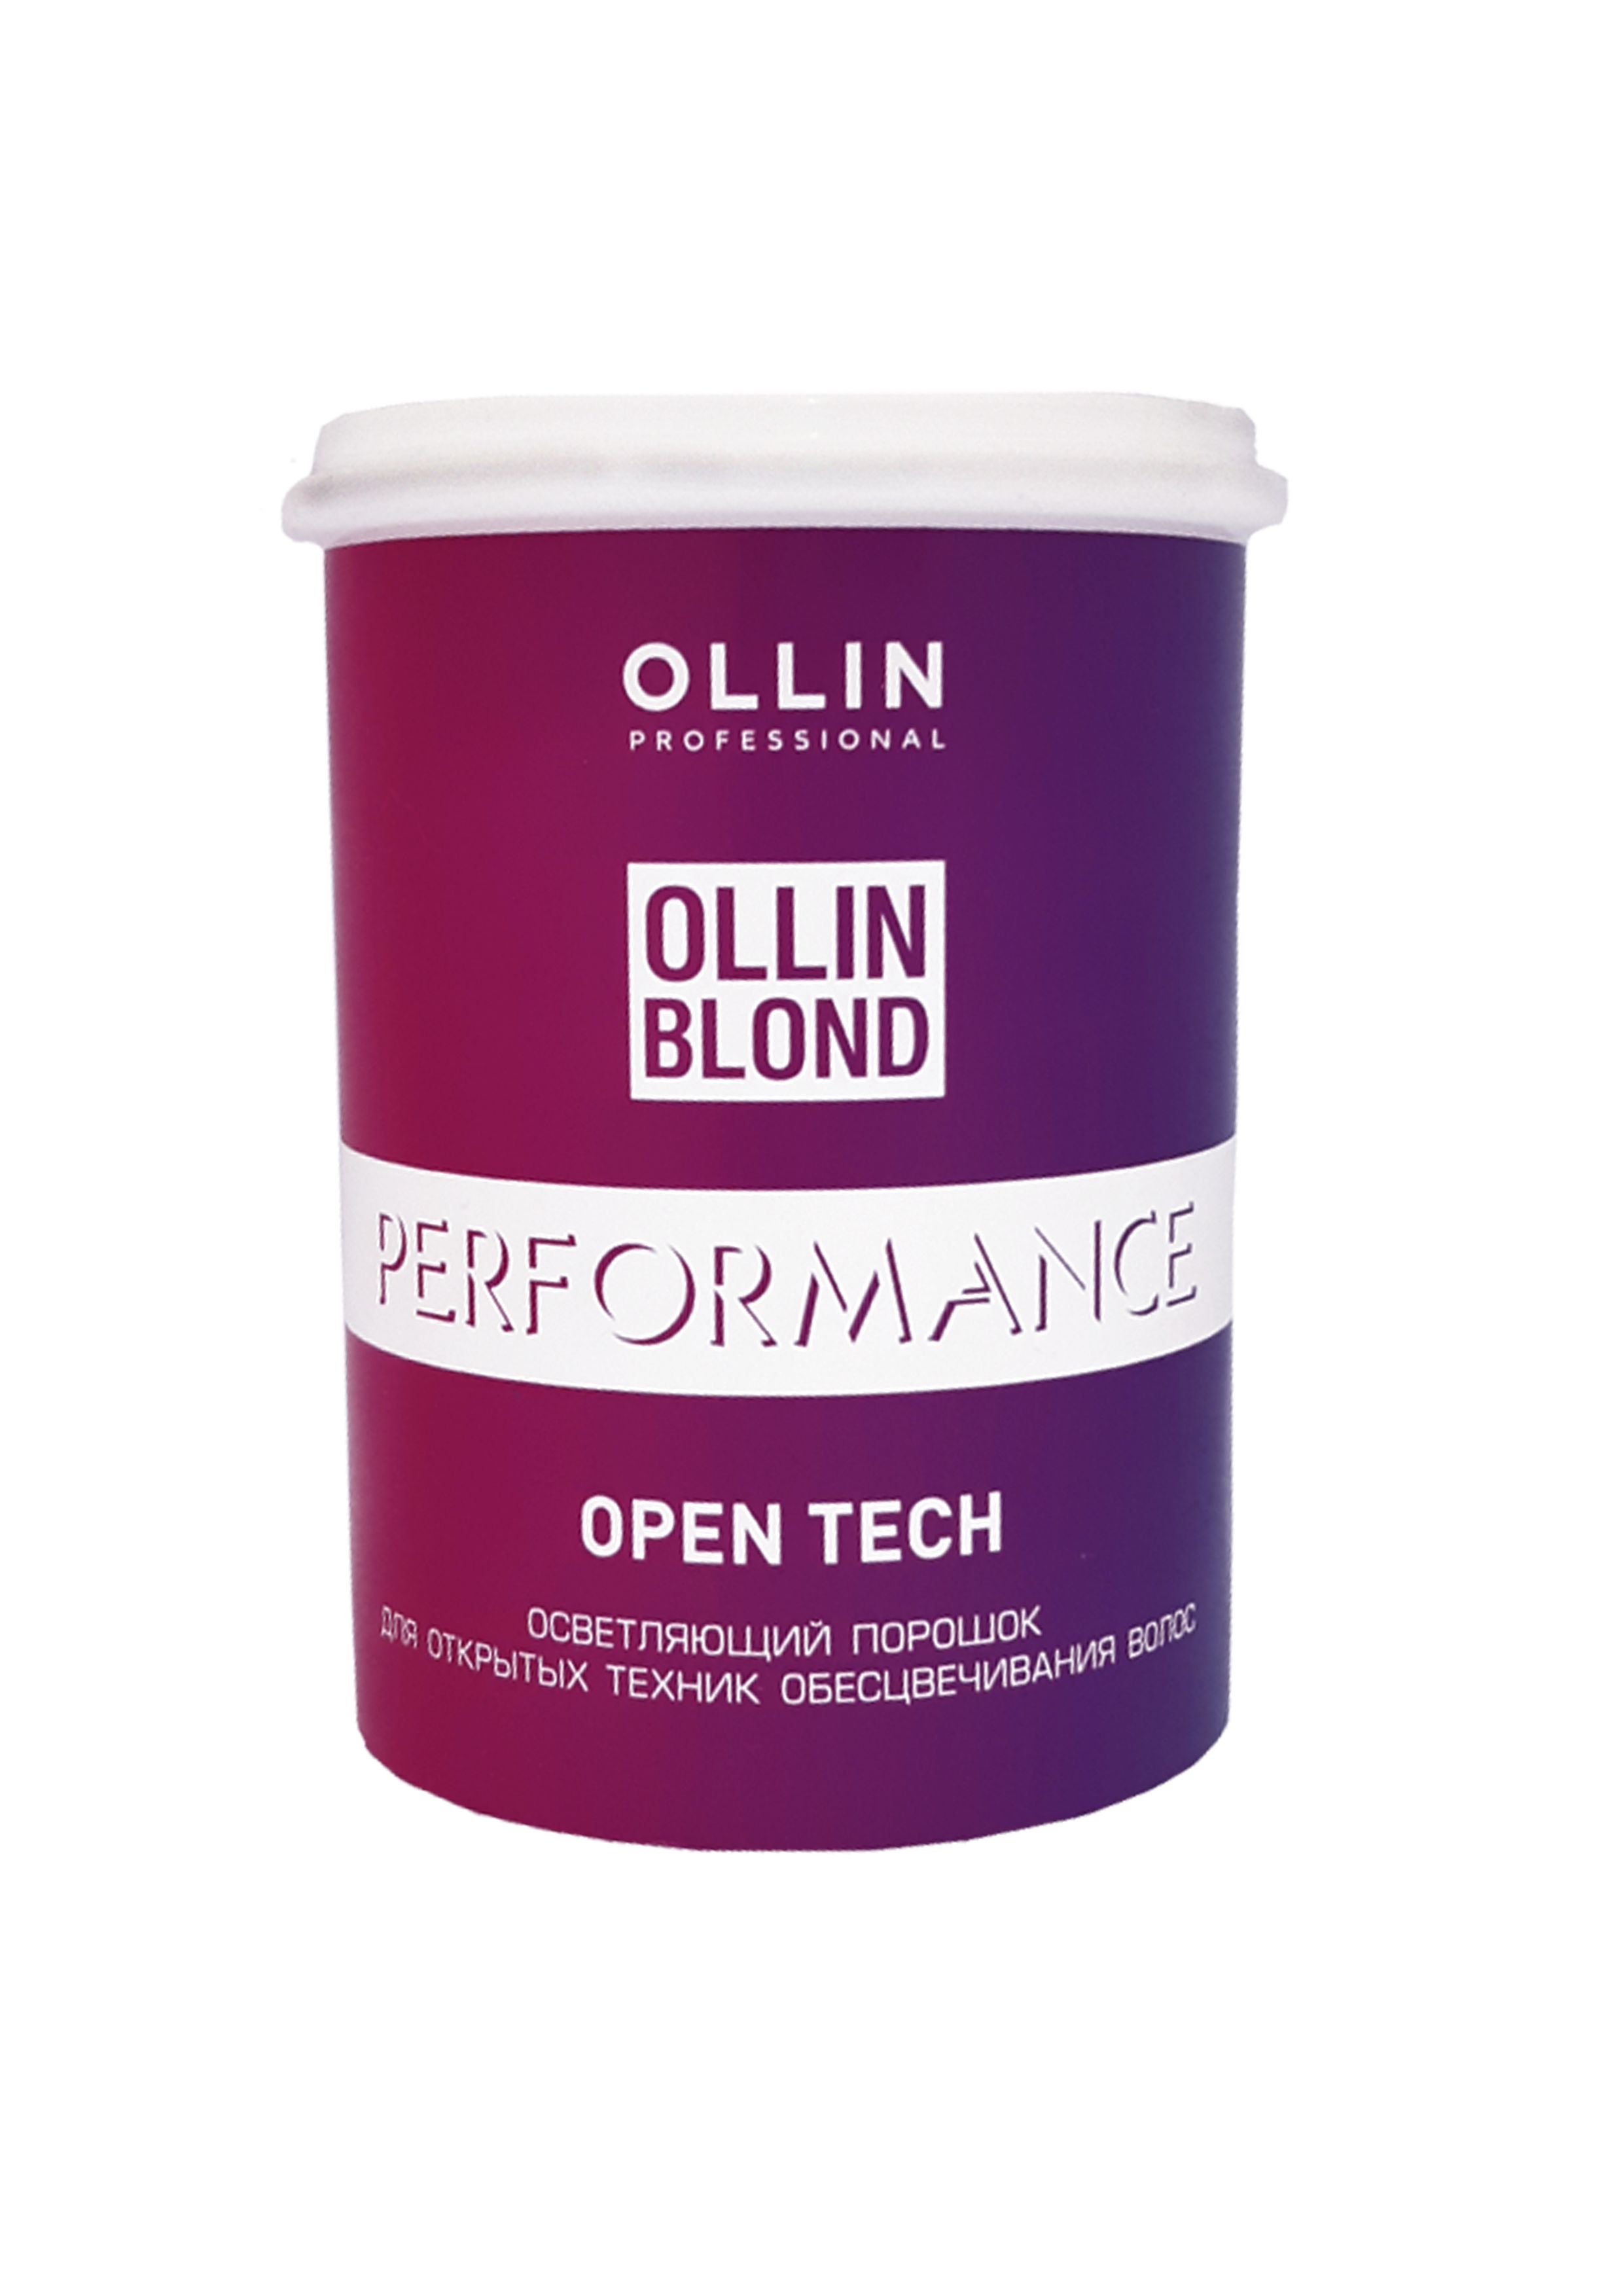 Осветляющий порошок ollin. Blond Performance open tach осветляющий порошок для открытых техник 500 г Ollin. Ollin blond осветляющий порошок (500 гр). Олин перфоманс осветляющий порошок. Осветляющий порошок Оллин белый.